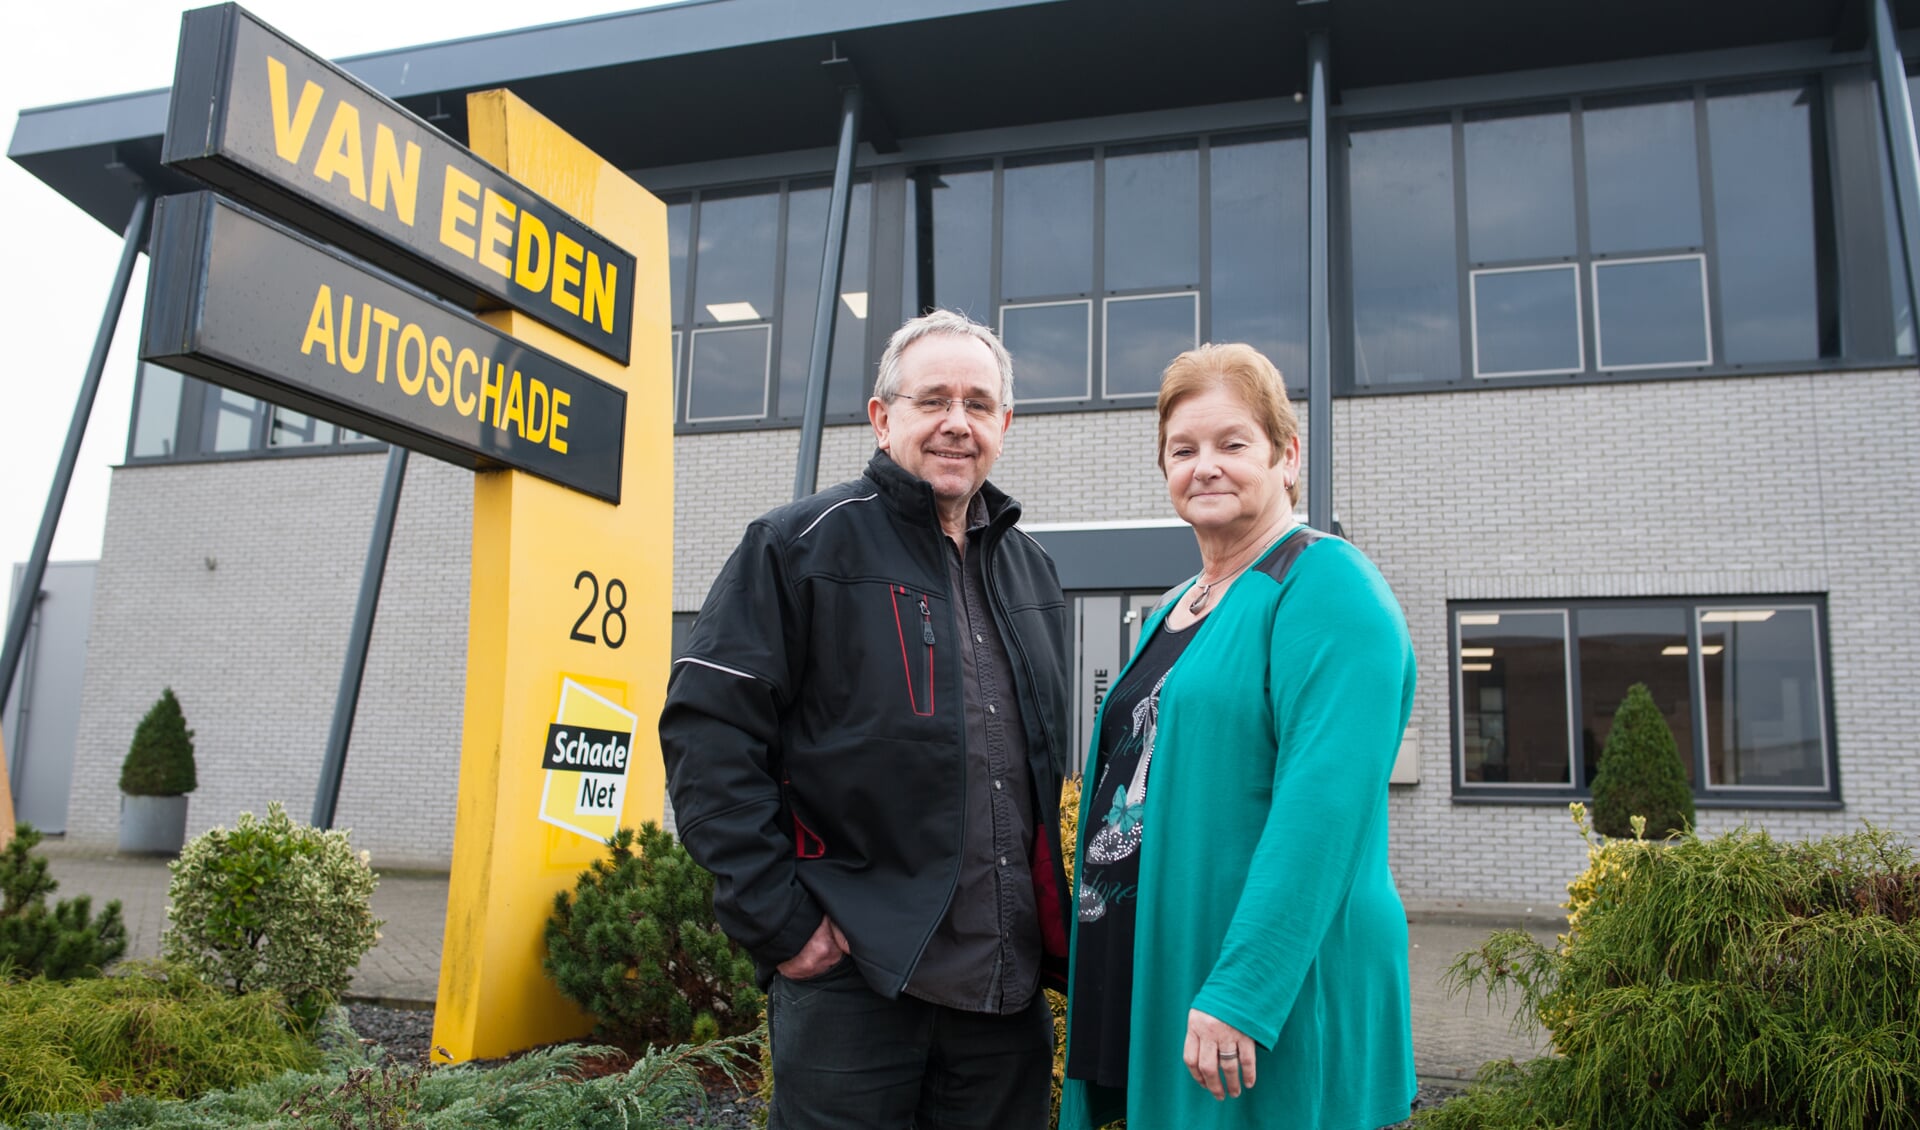 Nico en Ellie van Eeden: 'Met open dag sluiten we rotperiode definitief af.'